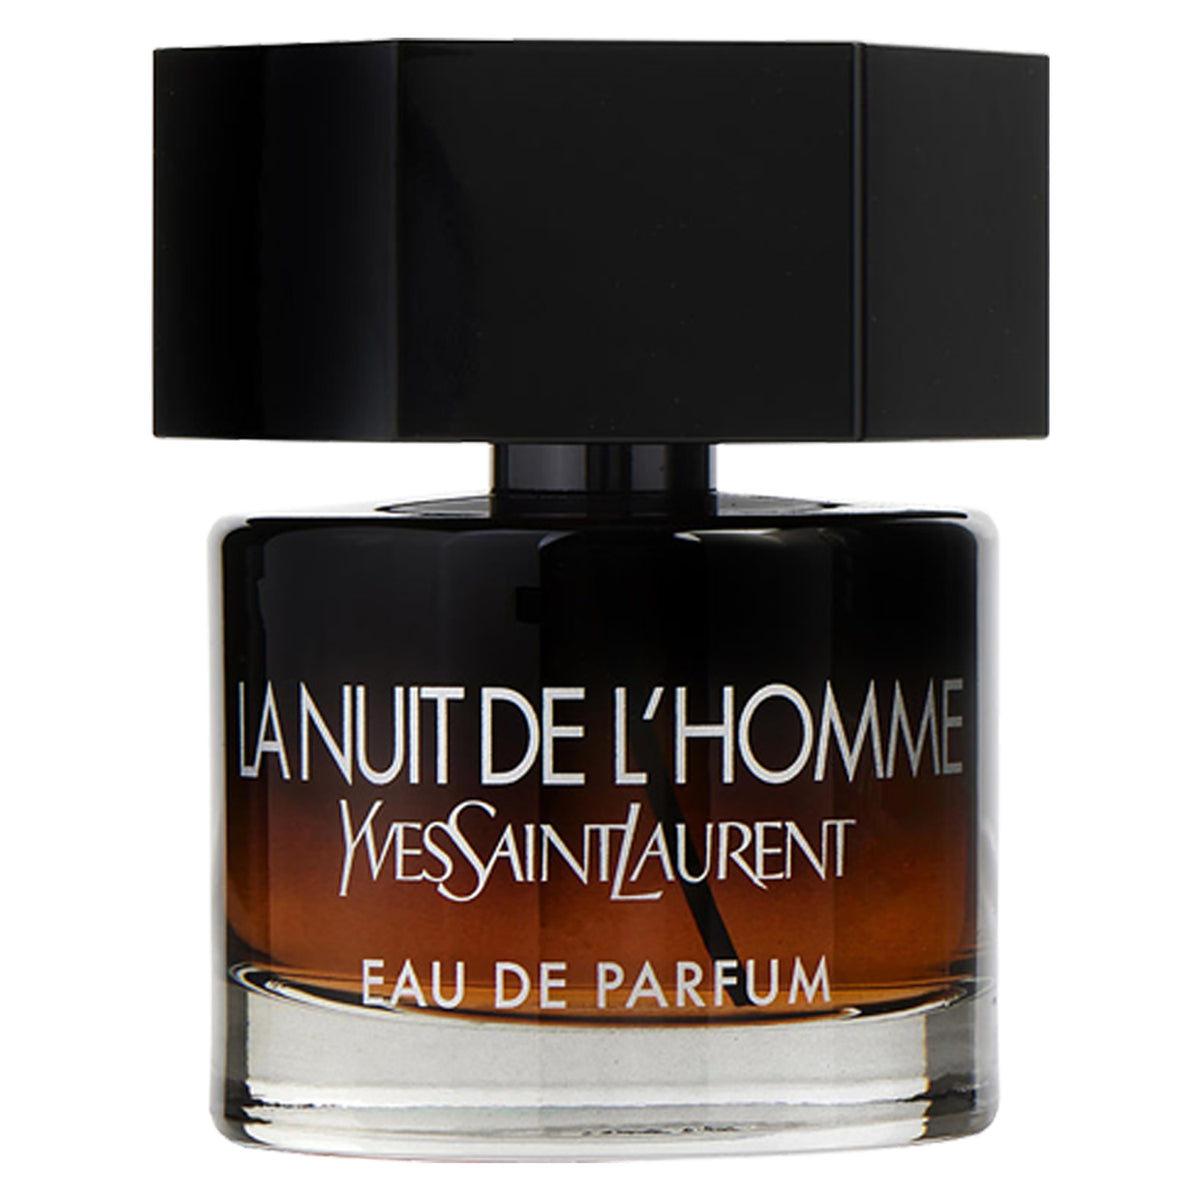 La Nuit De L'Homme Le Parfum by Yves Saint Laurent - Samples